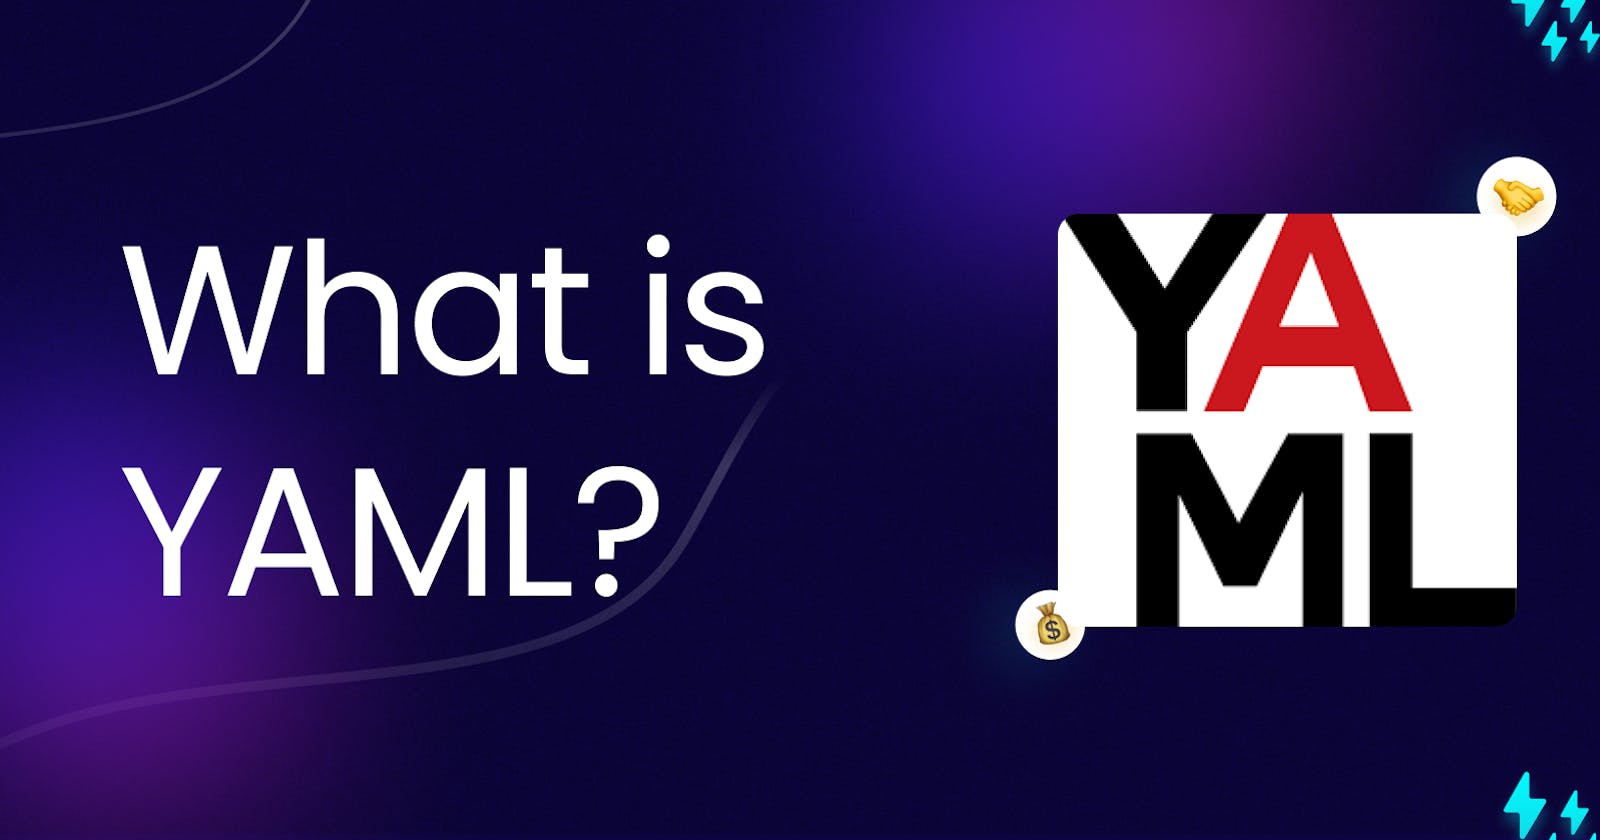 YAML: A Human-Friendly Data Serialization Language